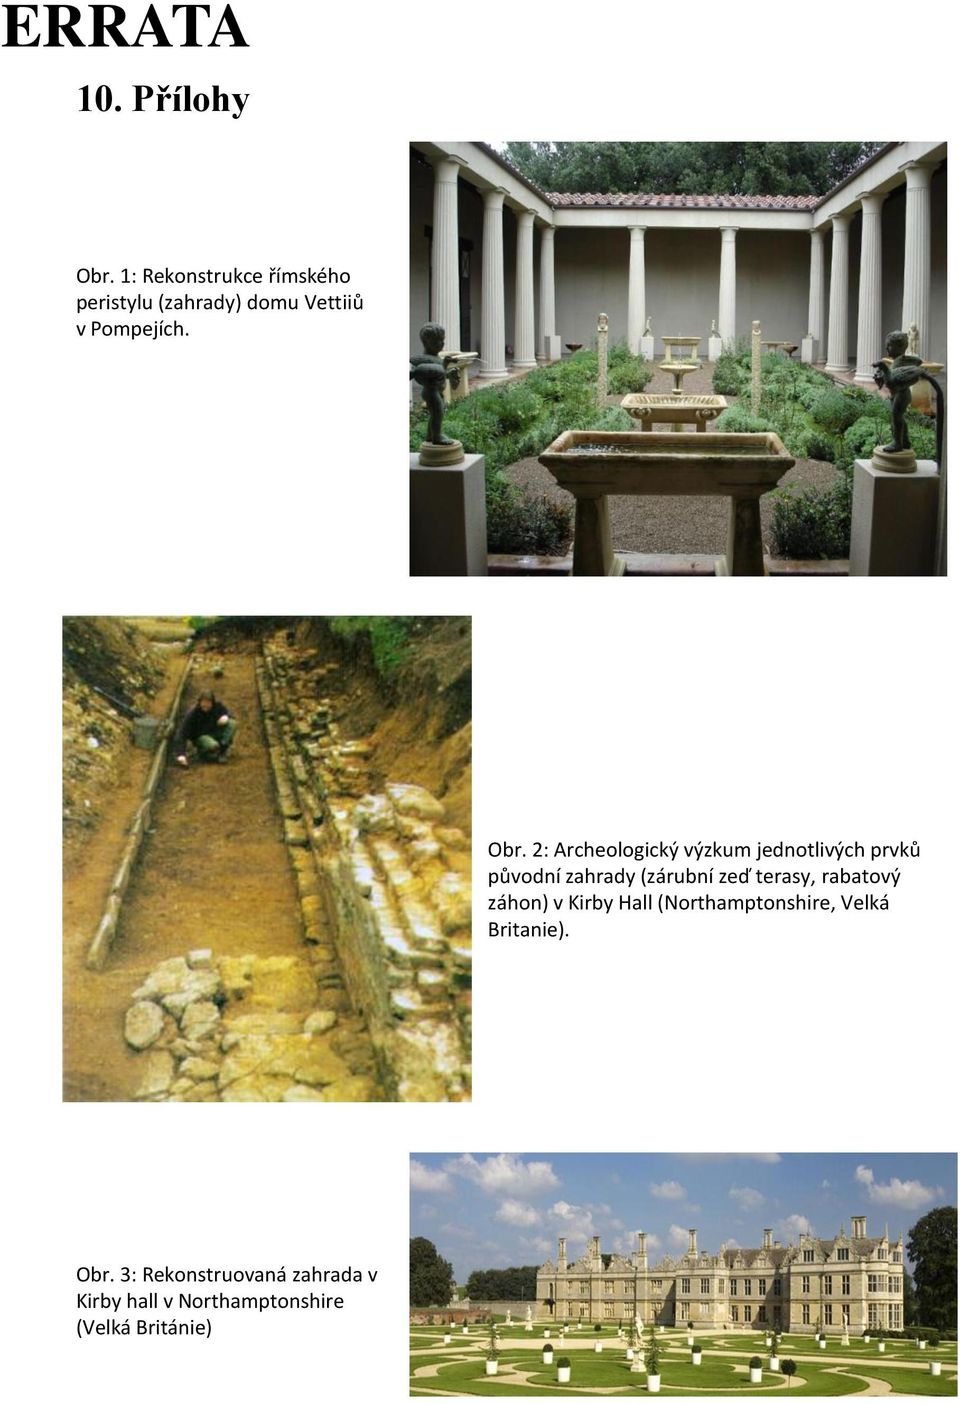 2: Archeologický výzkum jednotlivých prvků původní zahrady (zárubní zeď terasy,